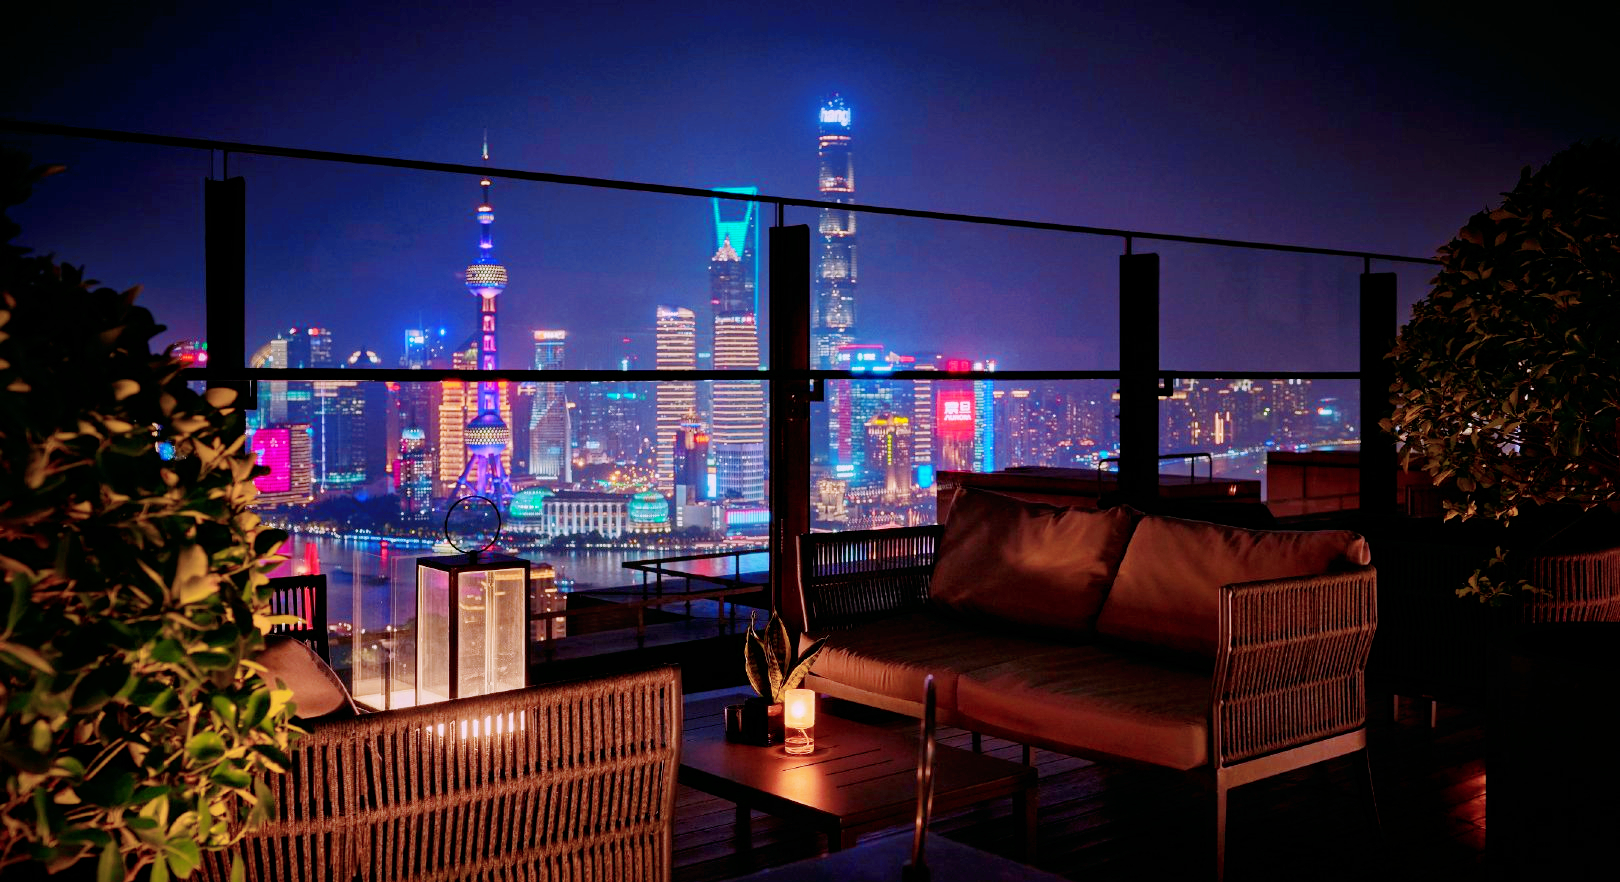 上海宝格丽酒店有多豪华?10万一晚,网友:大堂都是住不起的样子